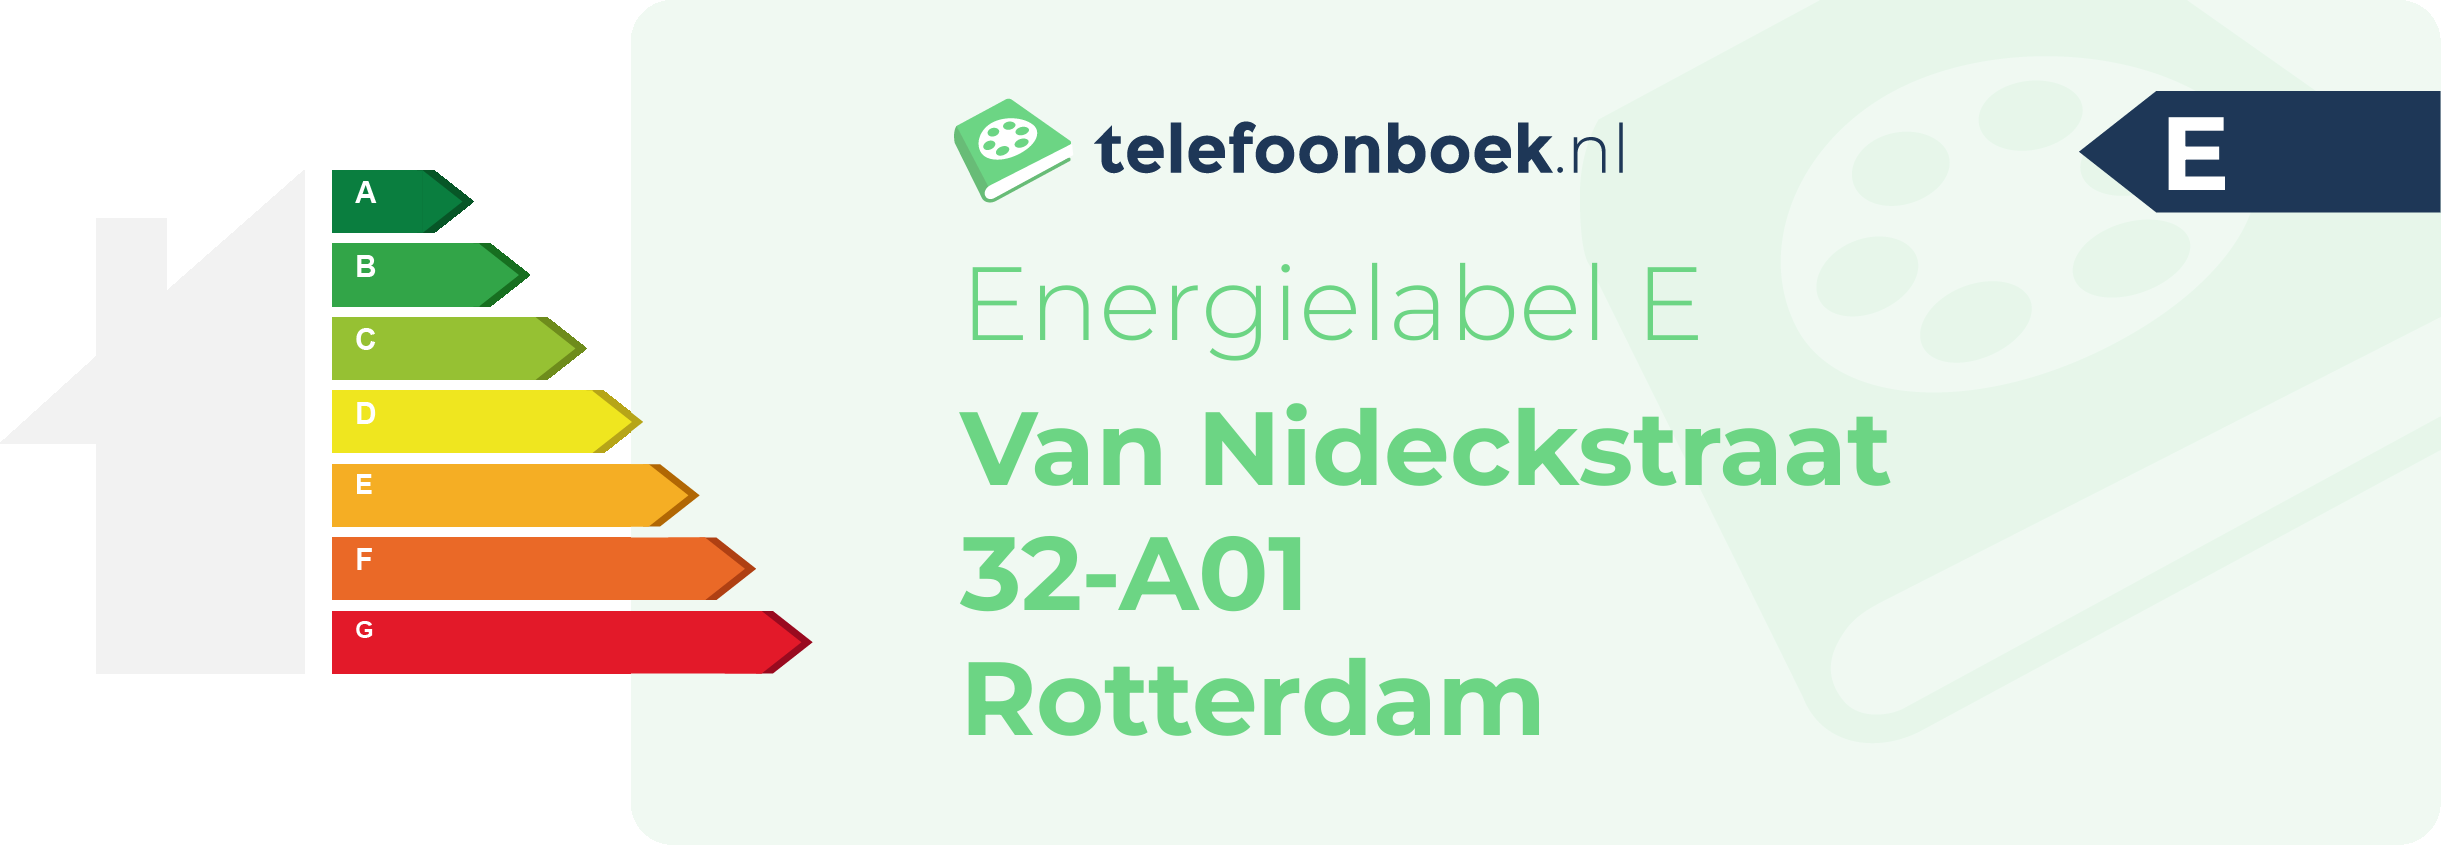 Energielabel Van Nideckstraat 32-A01 Rotterdam